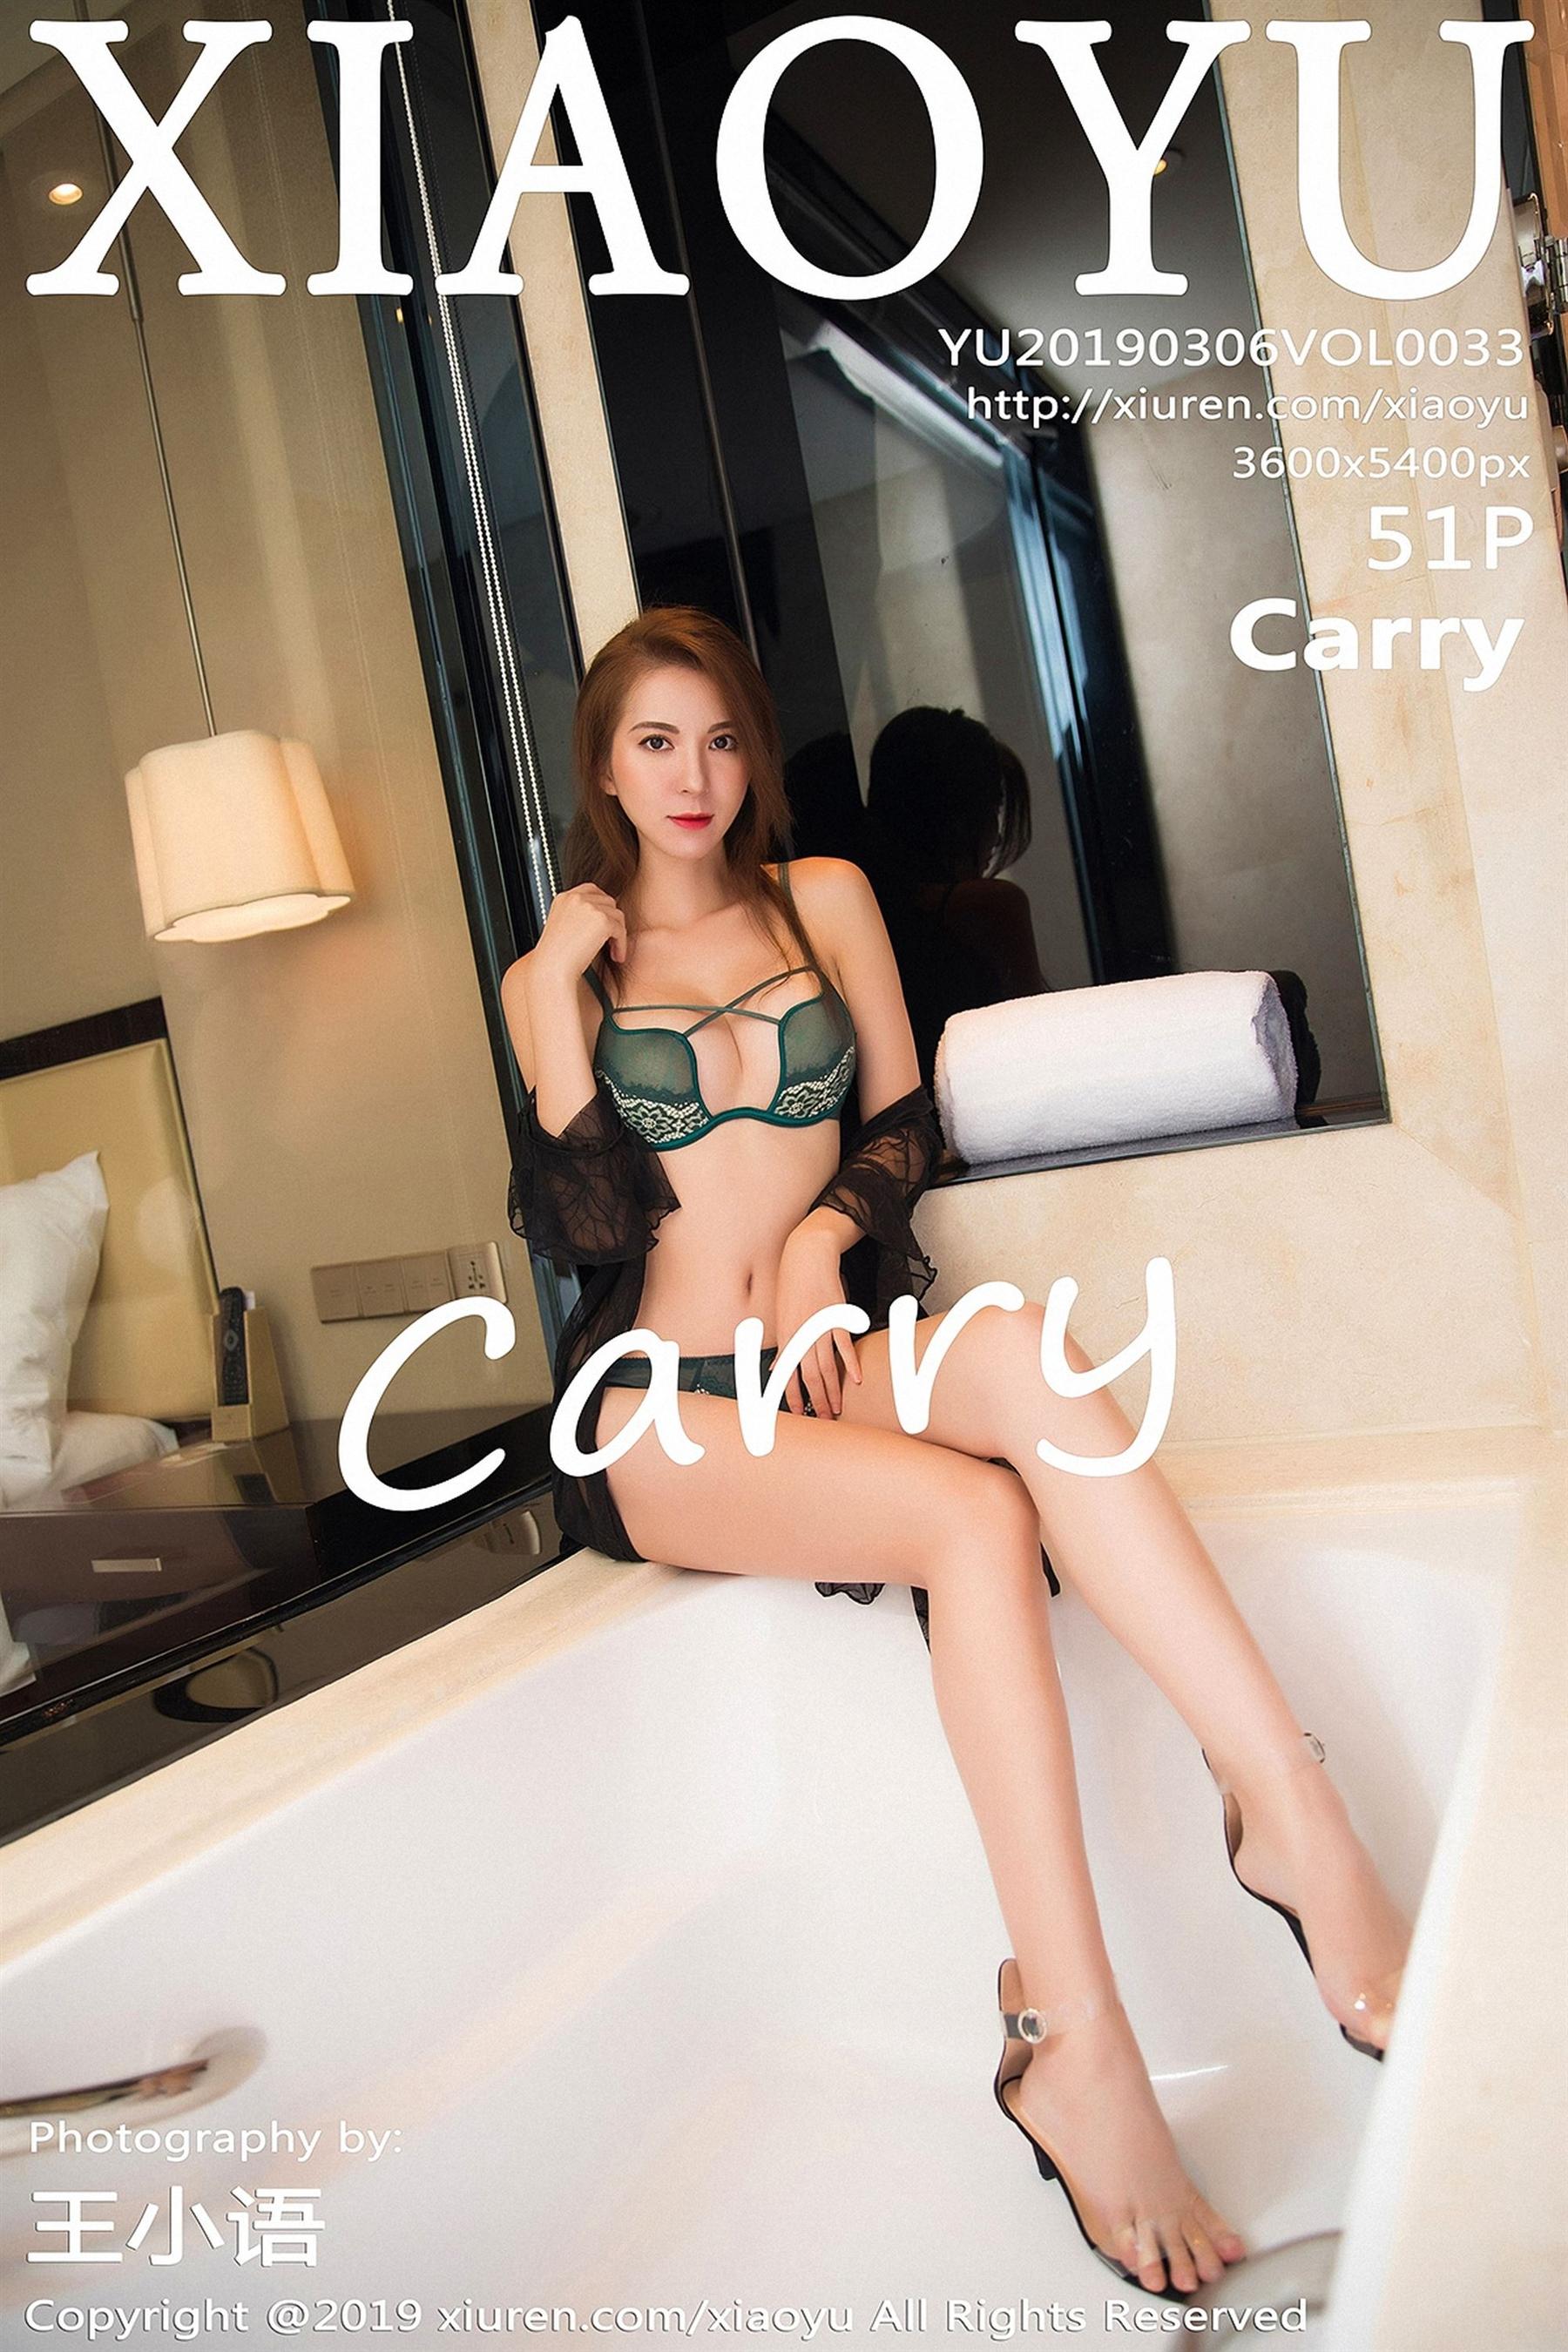 Xiaoyu 画语界 2019-03-06 Vol.033 carry - 50.jpg